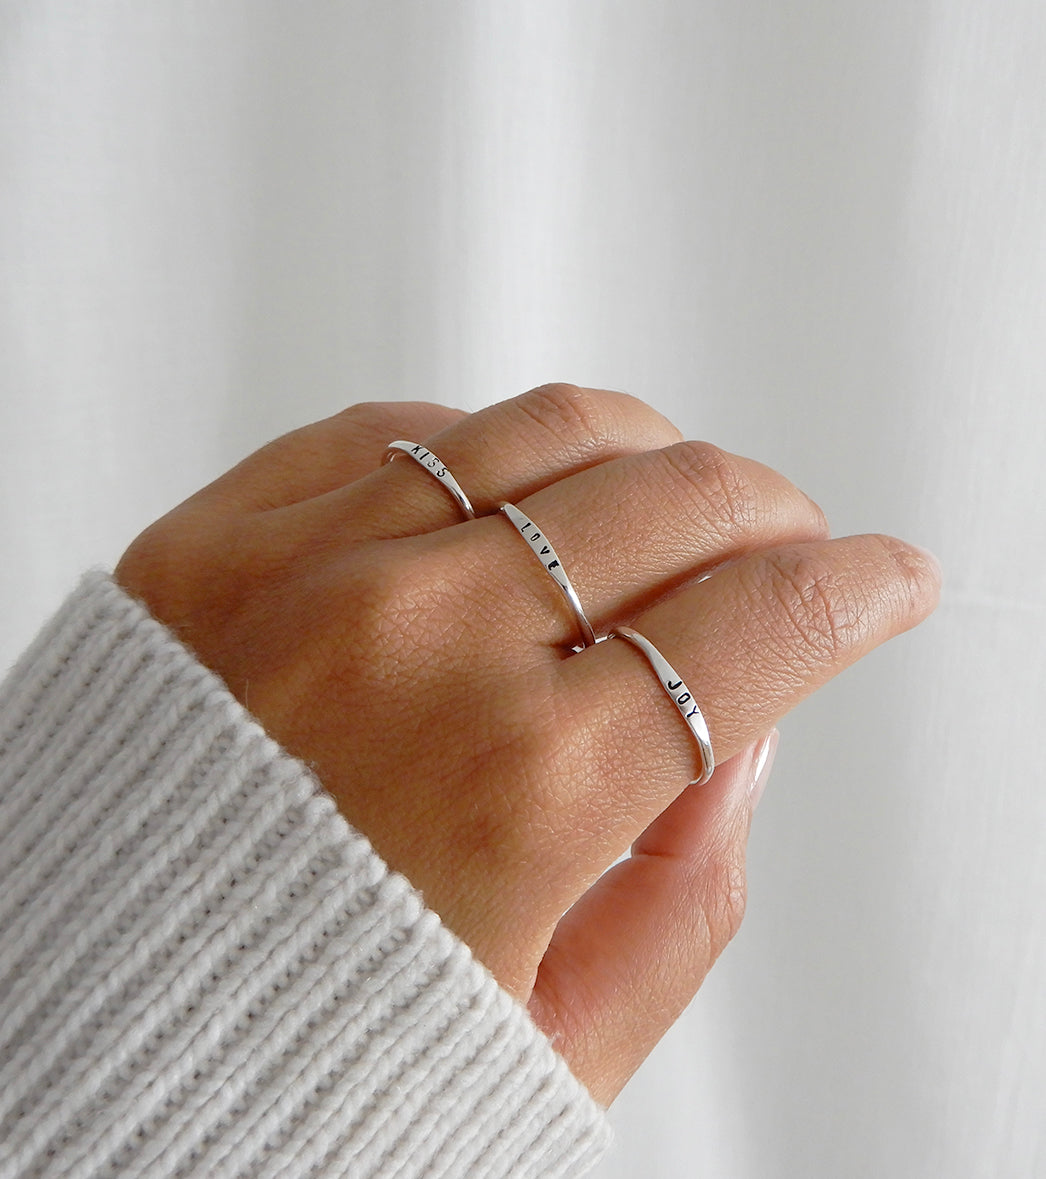 Ring | The mini signet